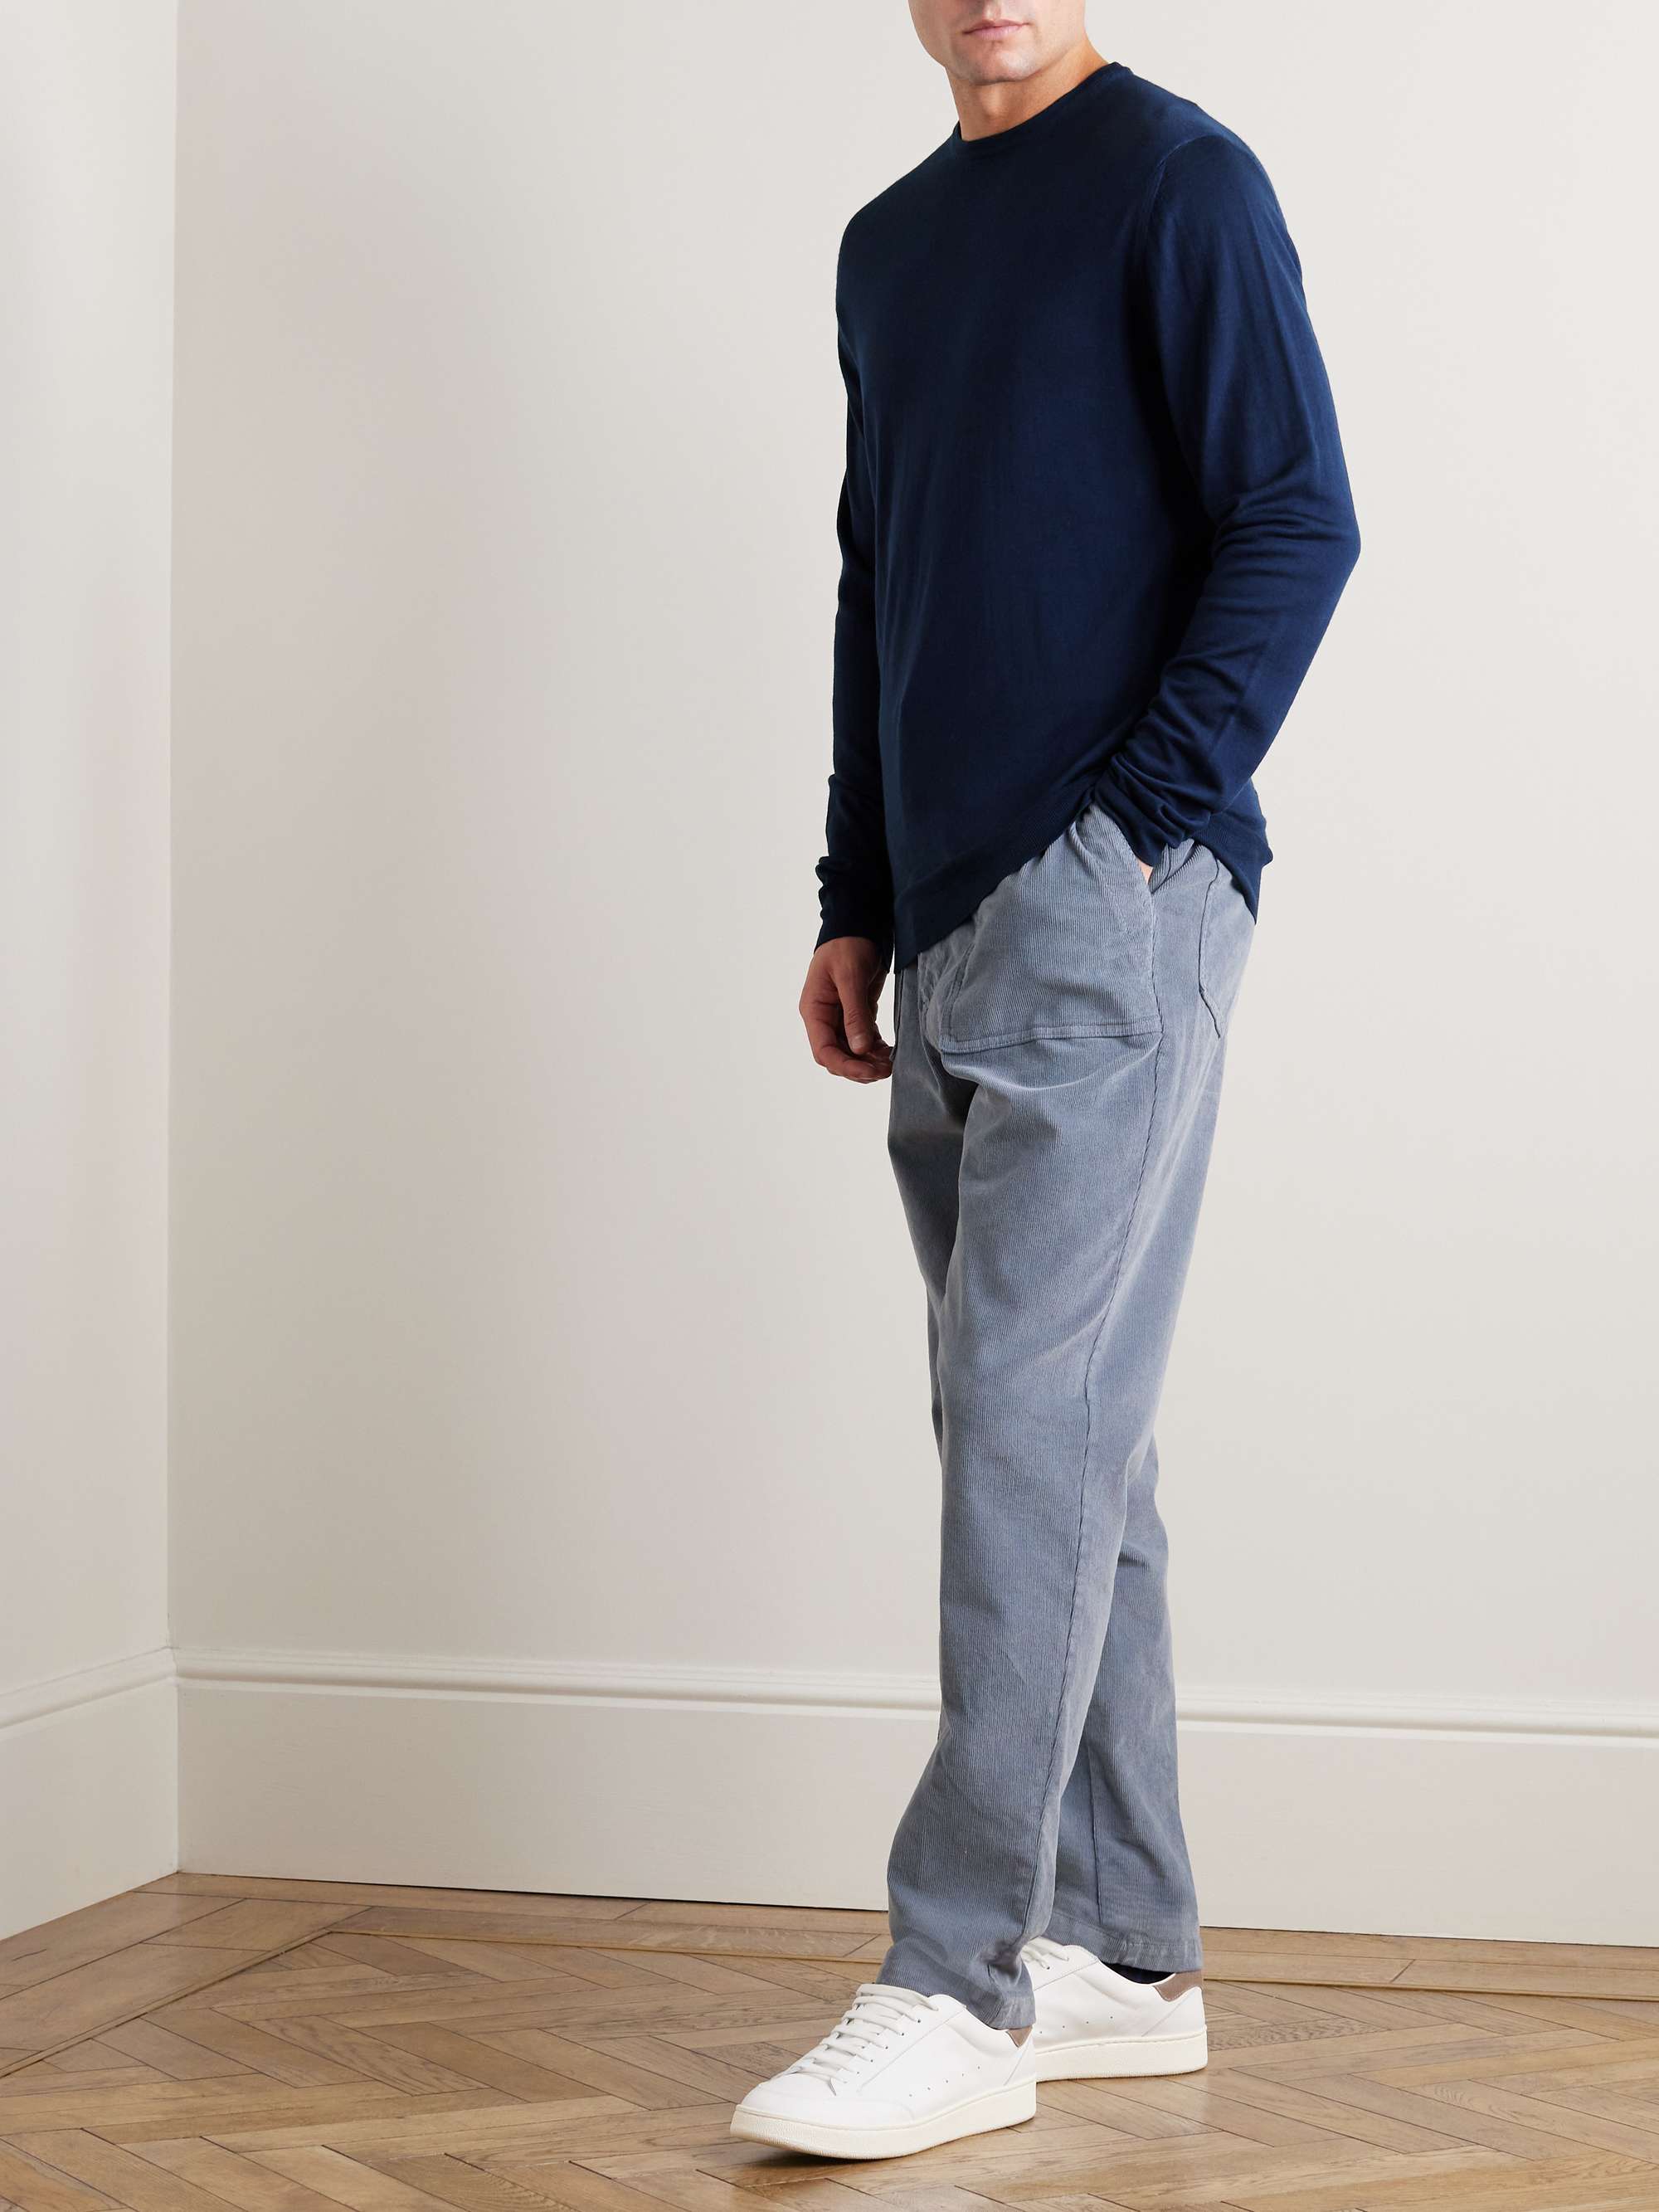 BARENA Ato Wool Sweater for Men | MR PORTER